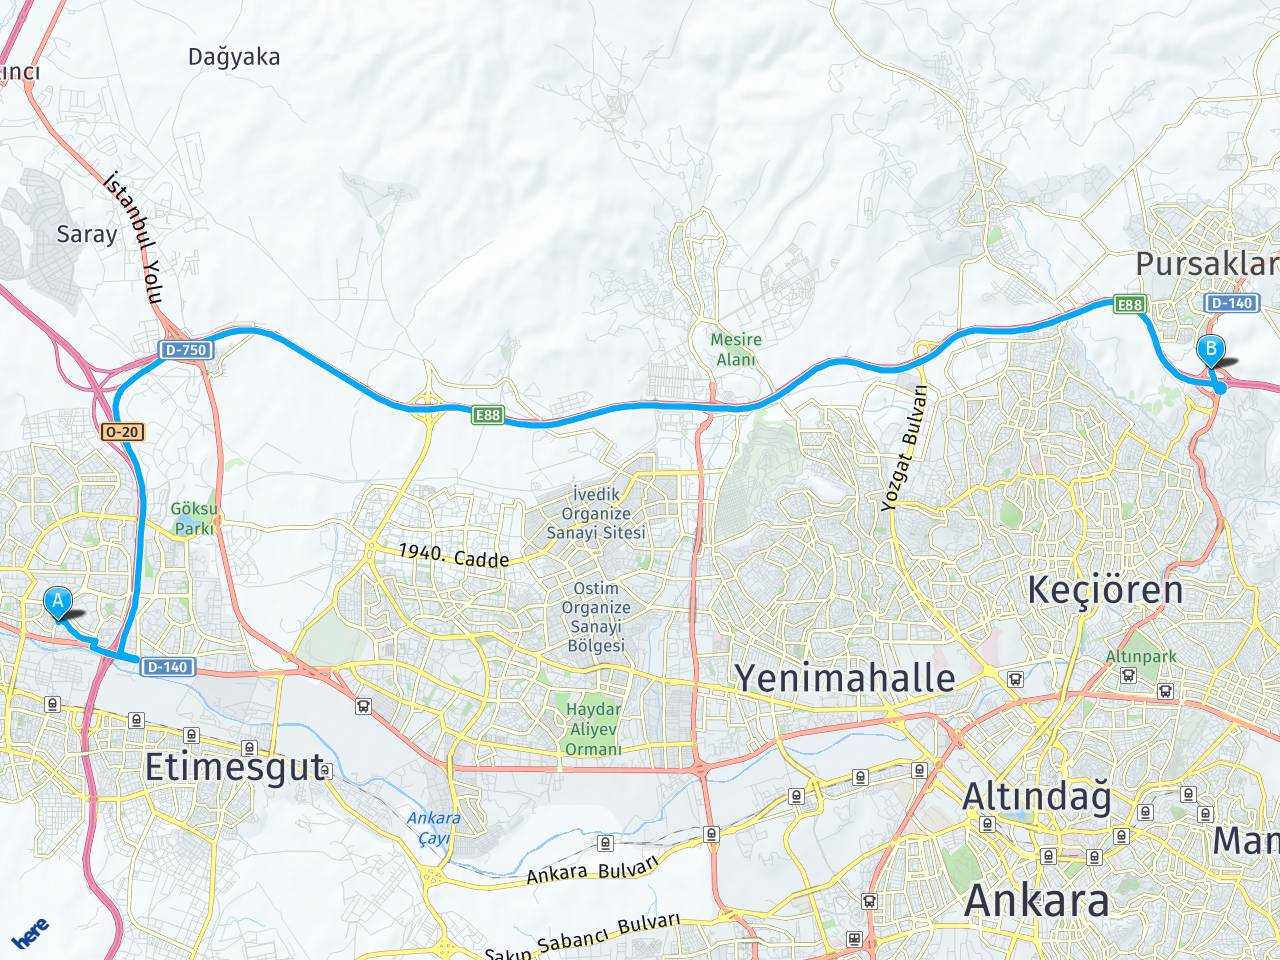 Ankara Eryaman Stadyumu Esenboğa Havalimanı 13. Km Altındağ, Ankara haritası